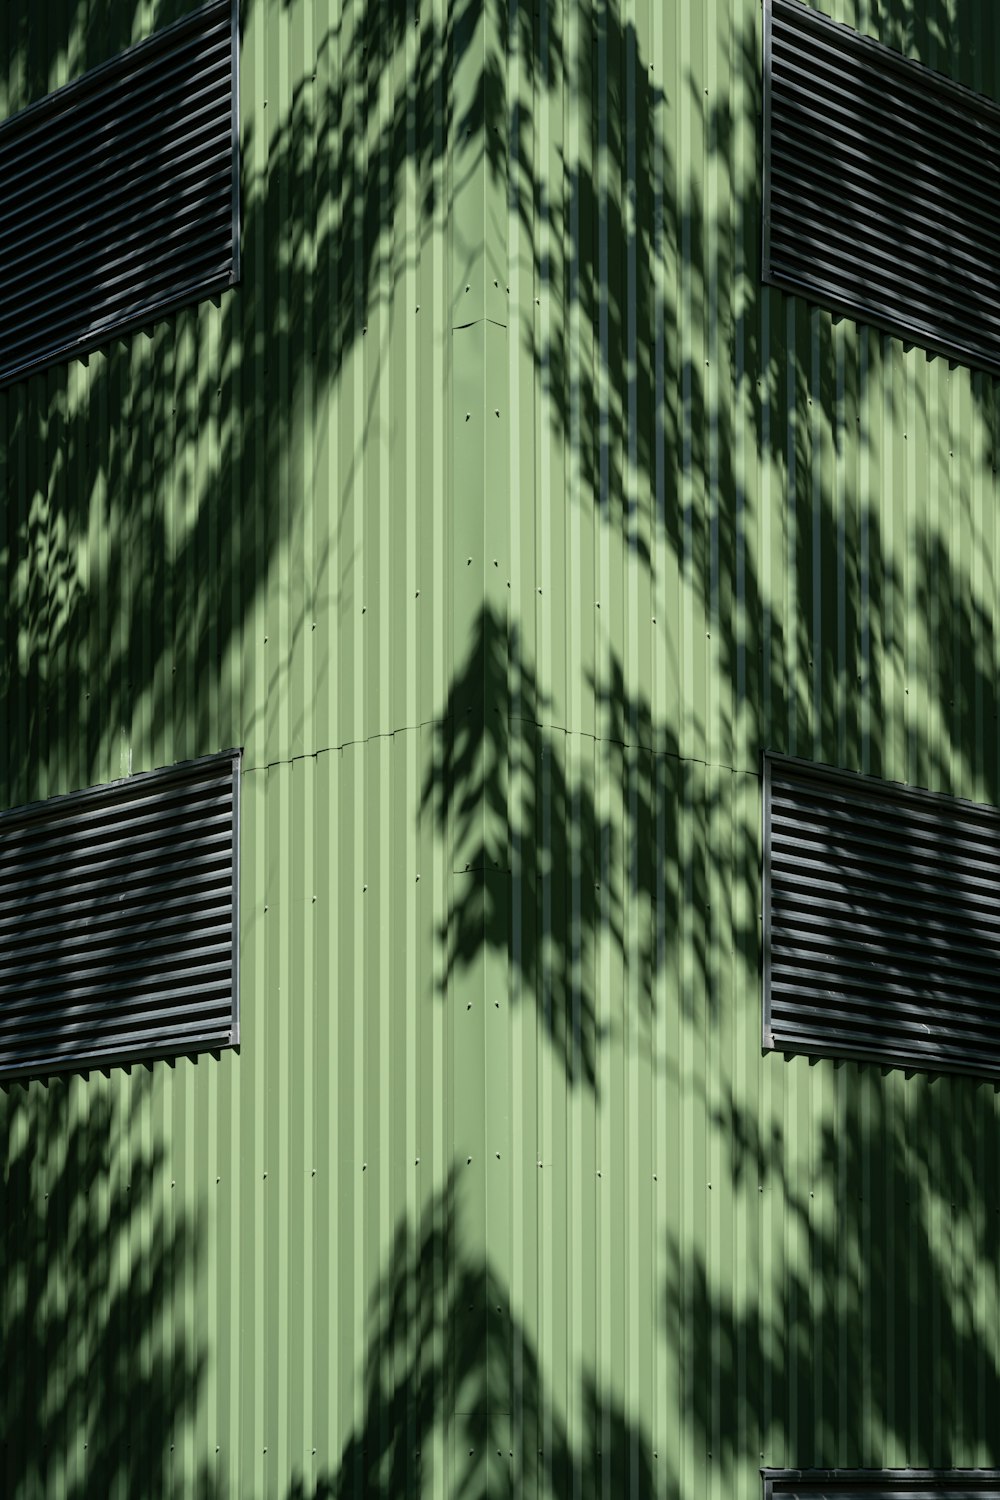 L’ombre d’un arbre sur un mur végétal